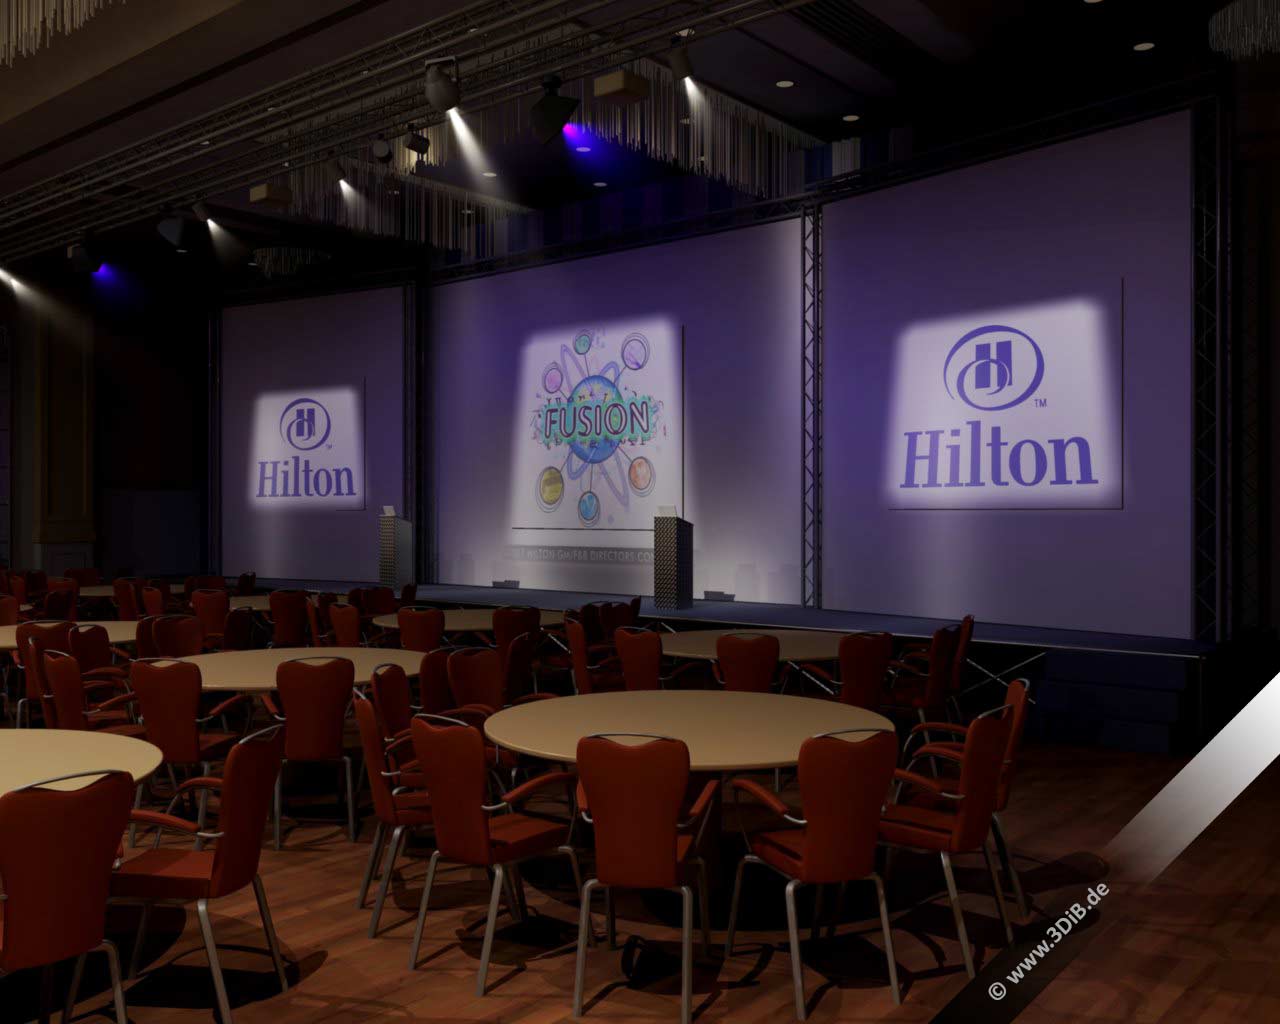 Eventvisualisierung-Hilton-konferenz_atmosphaerisch0000